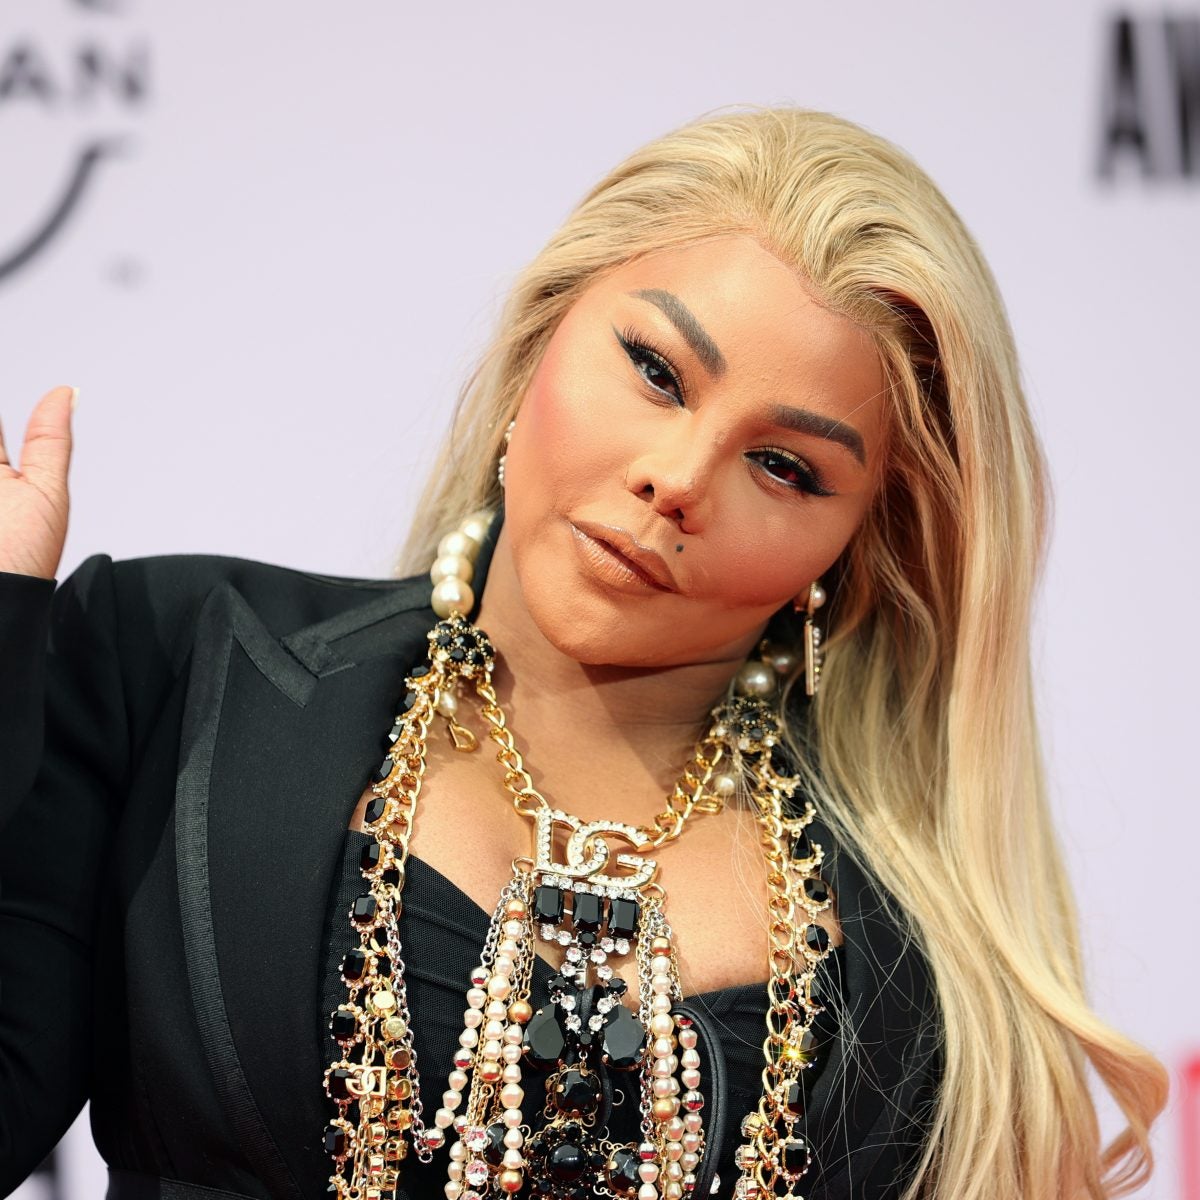 Lil Kim Reveals She Would Do A Verzuz Battle With Nicki Minaj